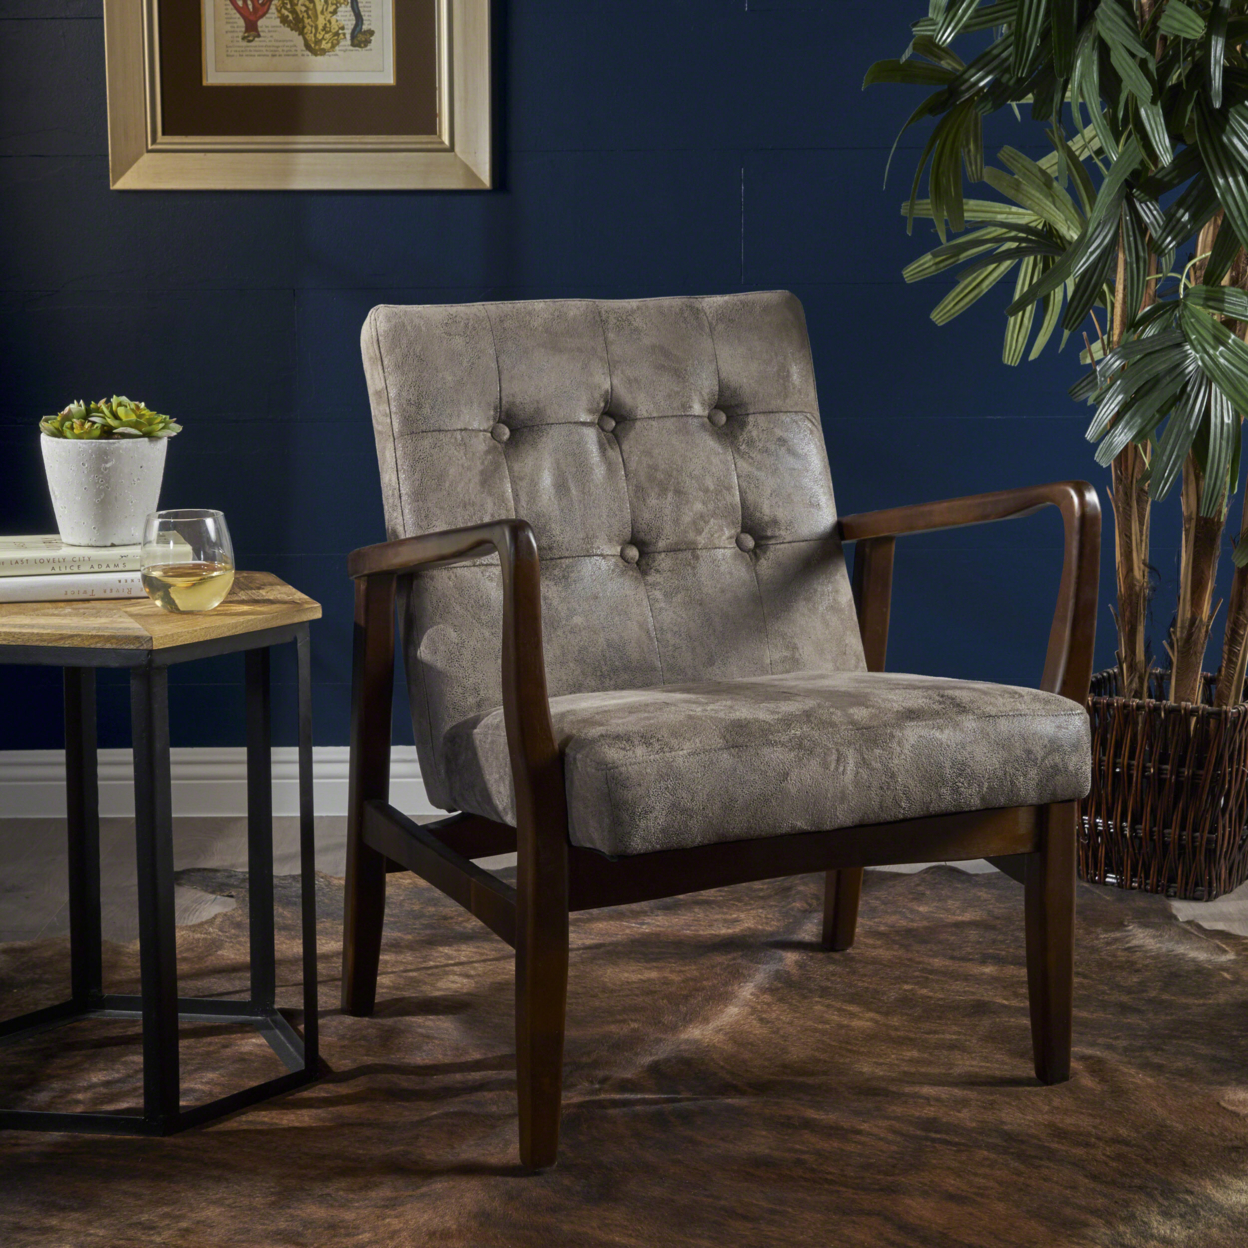 Conrad Mid Century Modern Microfiber Club Chair With Wood Frame - Slate/Dark Espresso